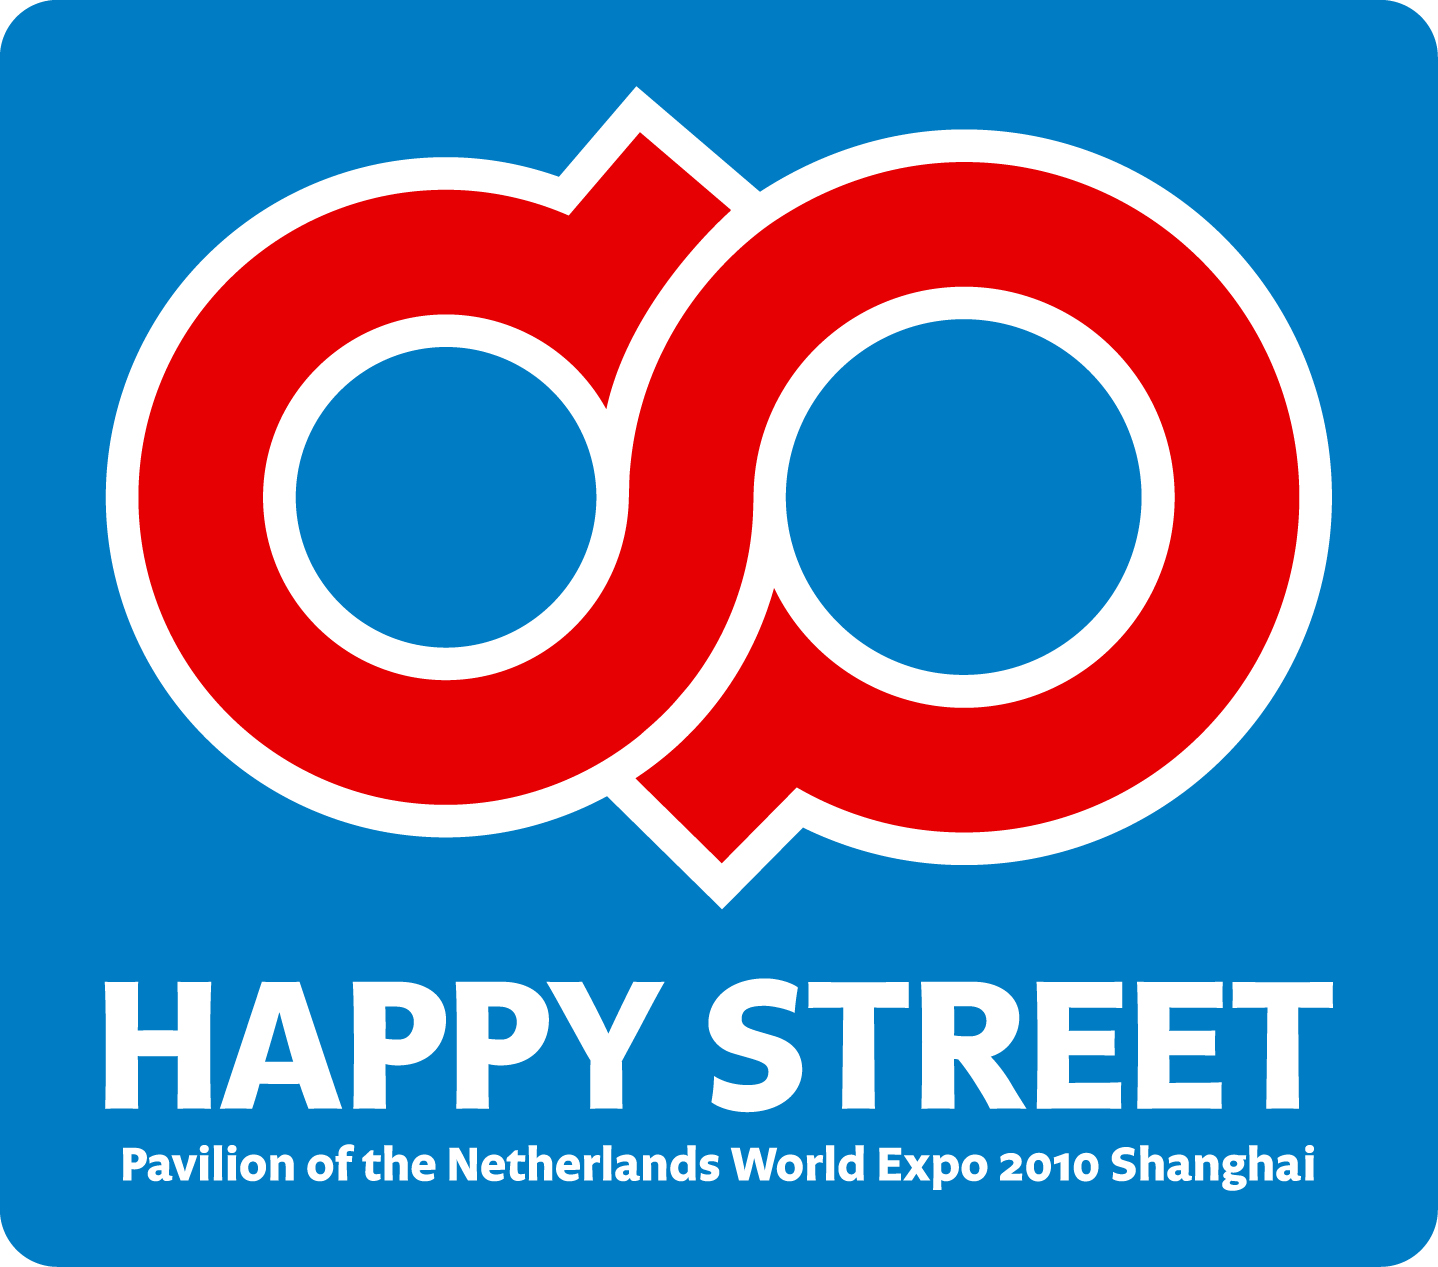 www.HappyStreet.nl